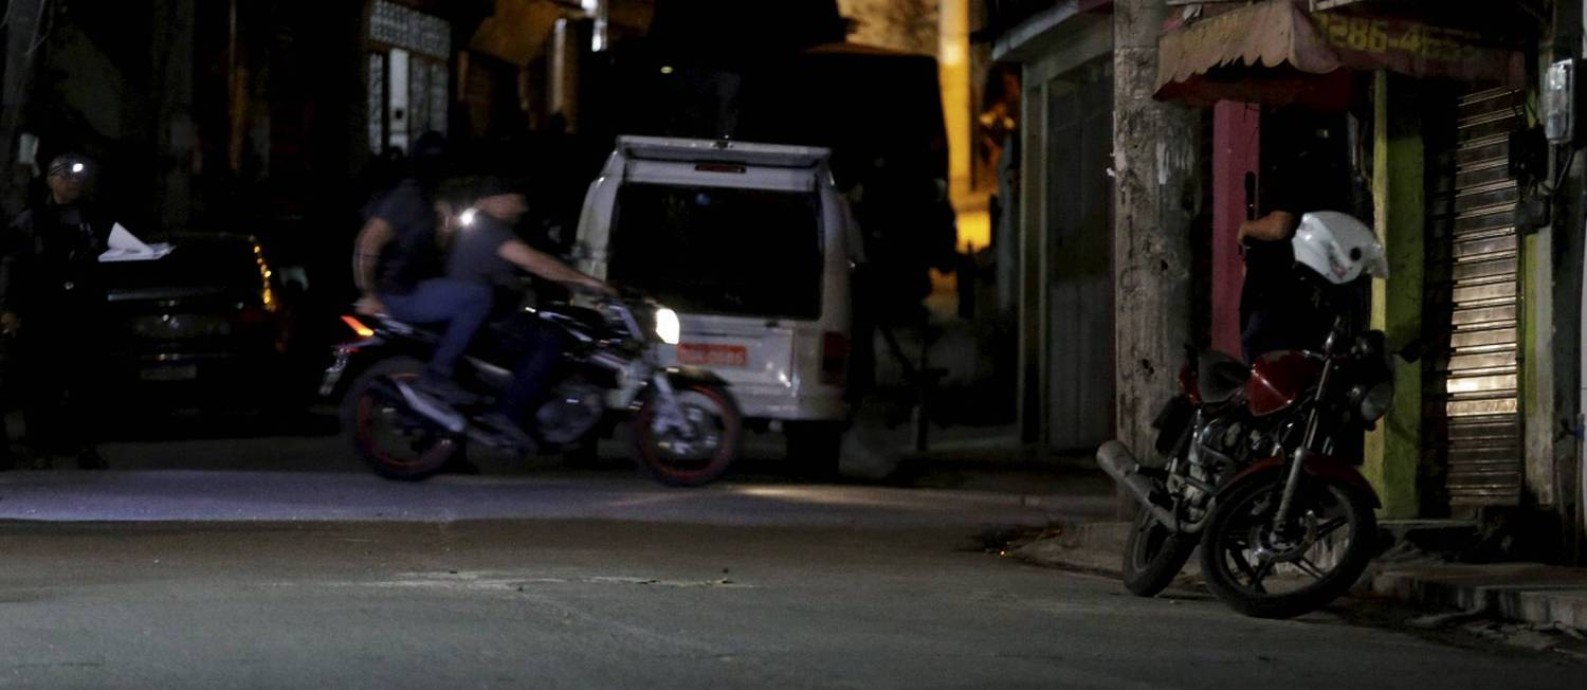 Uma moto foi usada na reconstituição da morte da menina Ágatha Foto: Domingos Peixoto / Agência O Globo